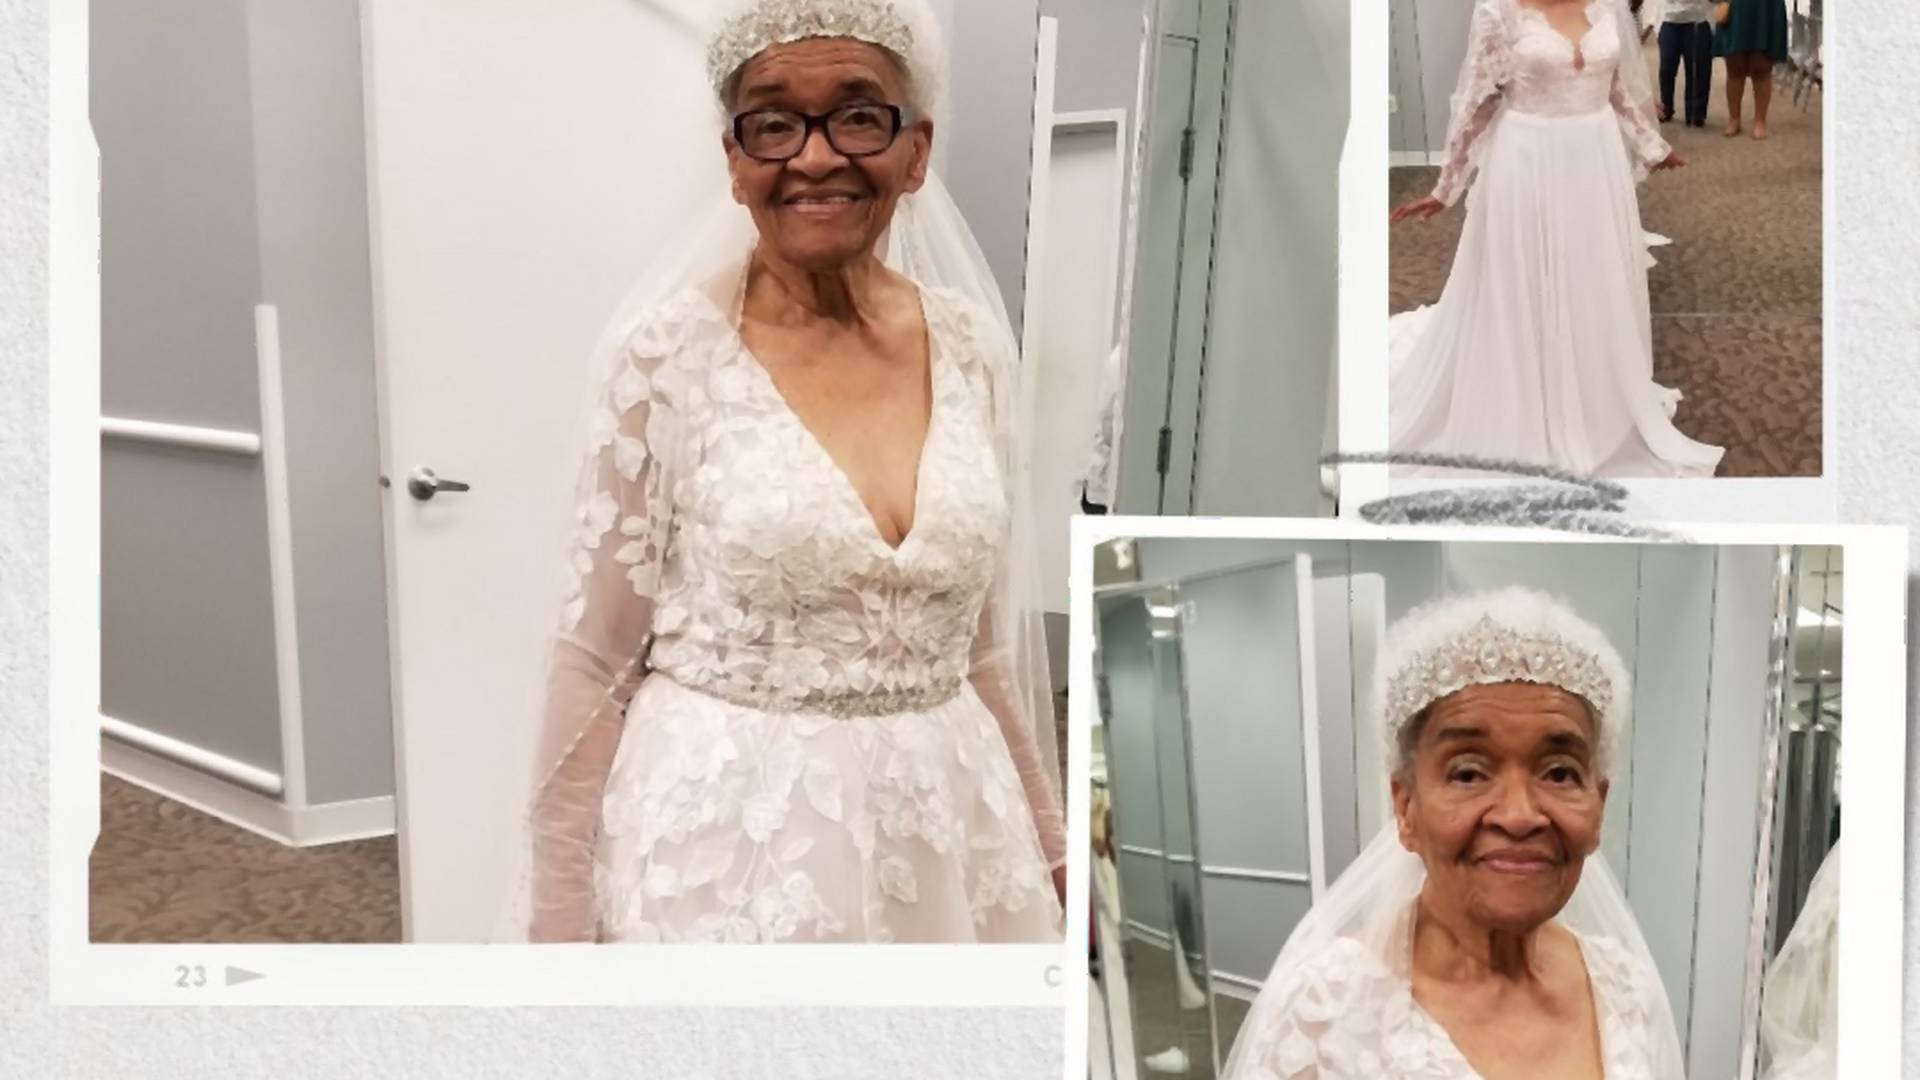 Nie mogła przymierzyć sukni ślubnej, bo jest czarnoskóra. W wieku 94 lat w końcu to zrobiła